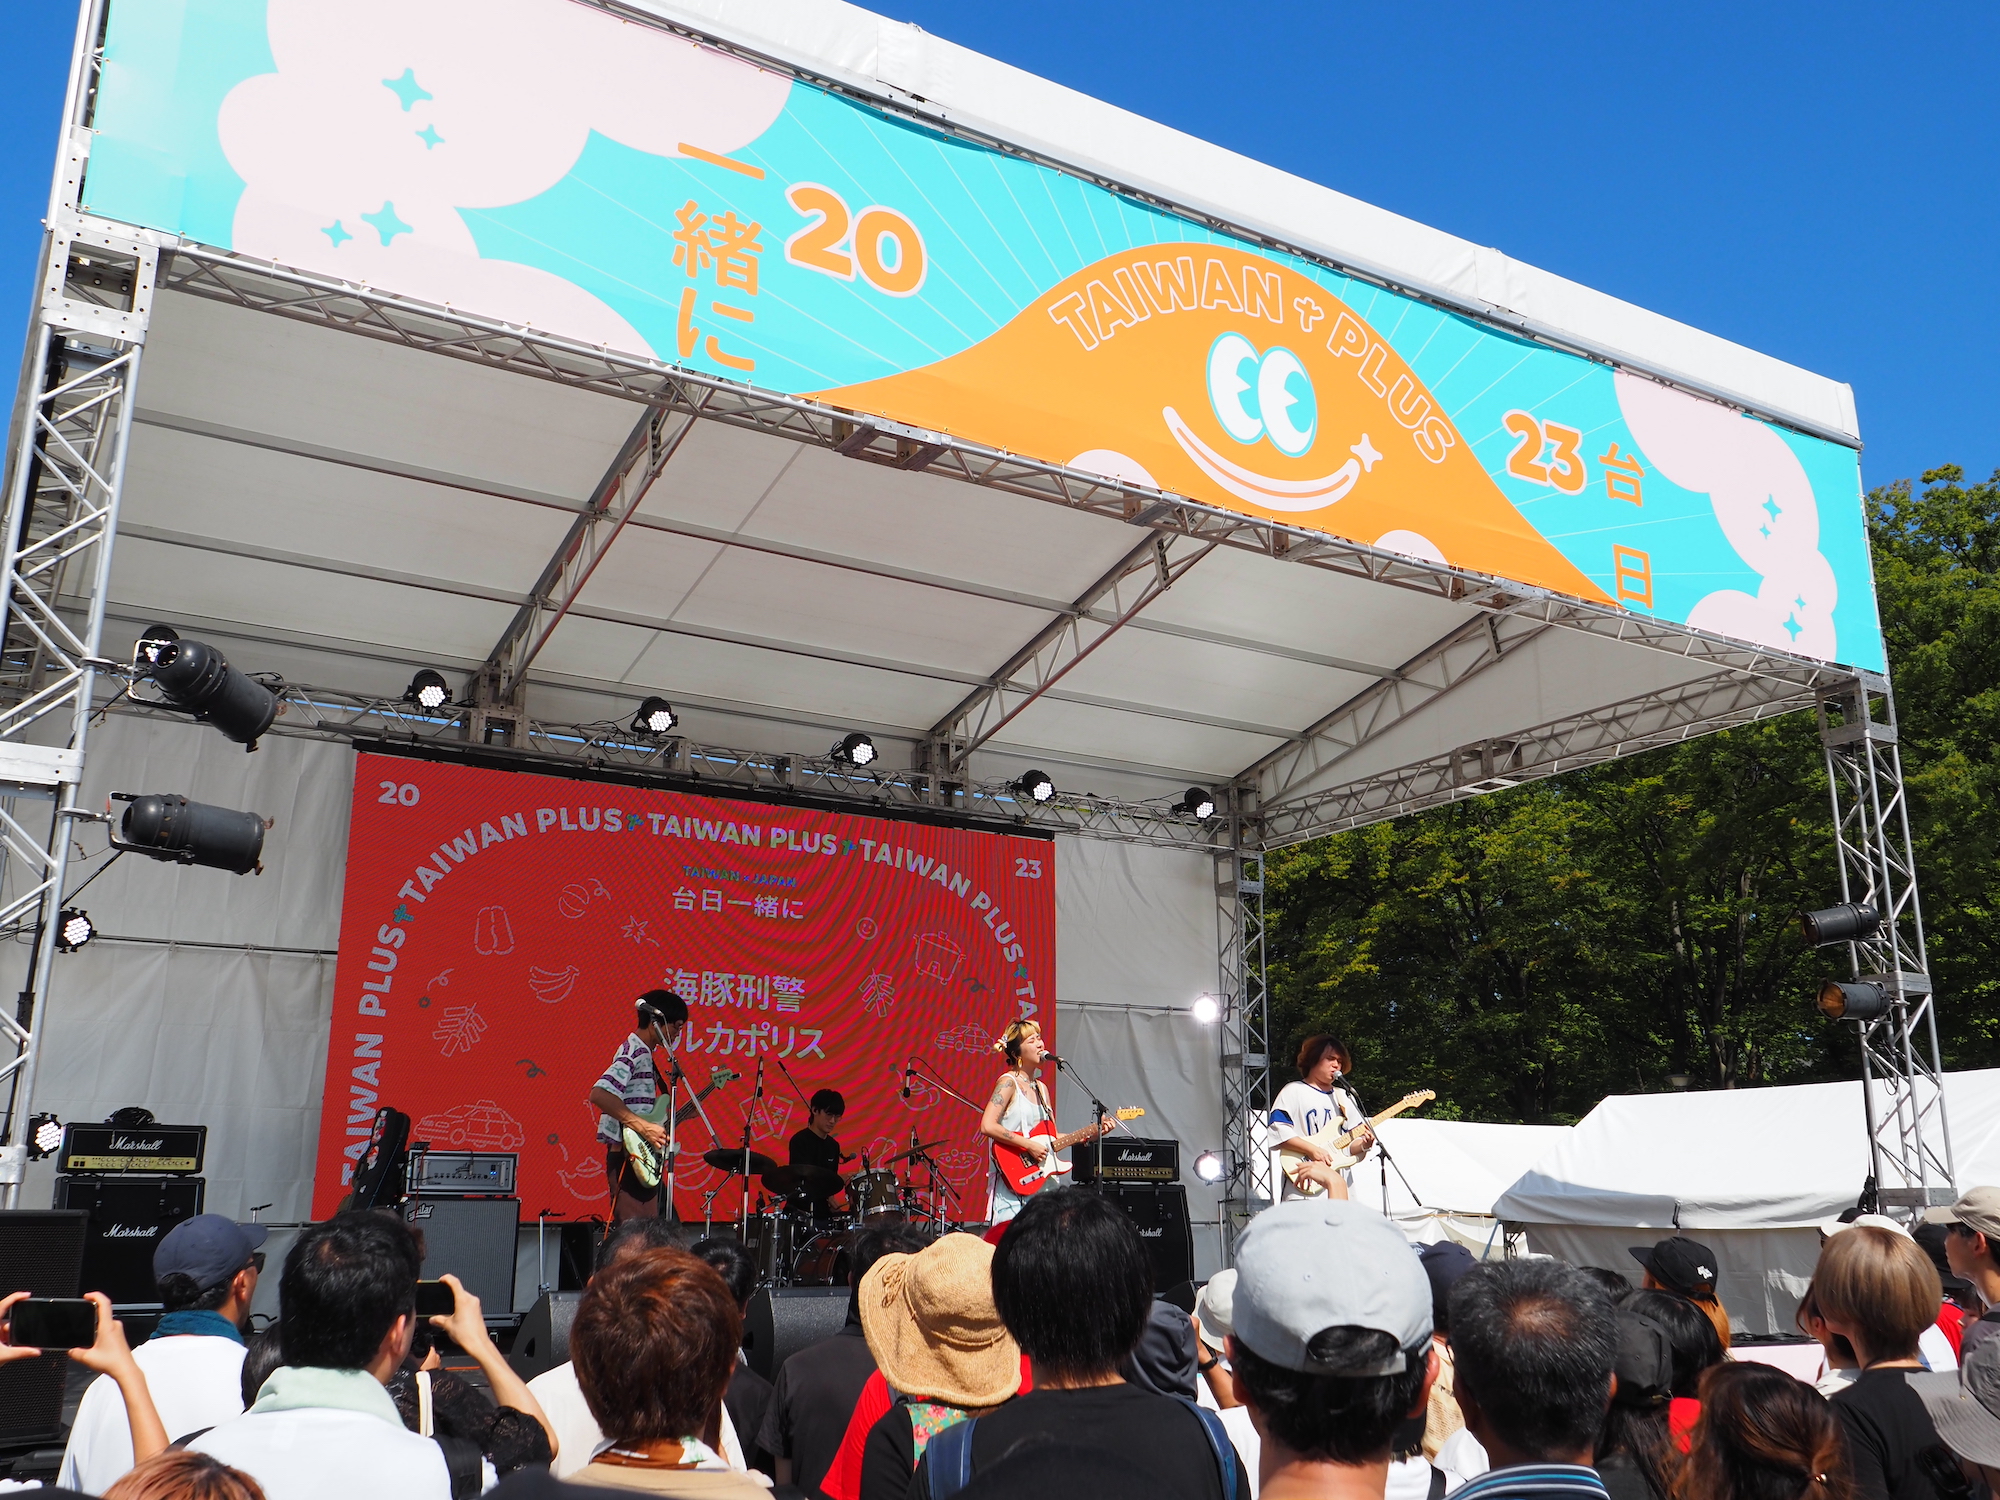 推すなら今！ 才能と遊び心が爆発する、台湾のオルタナポップバンド「イルカポリス 海豚刑警」【インタビュー付き】